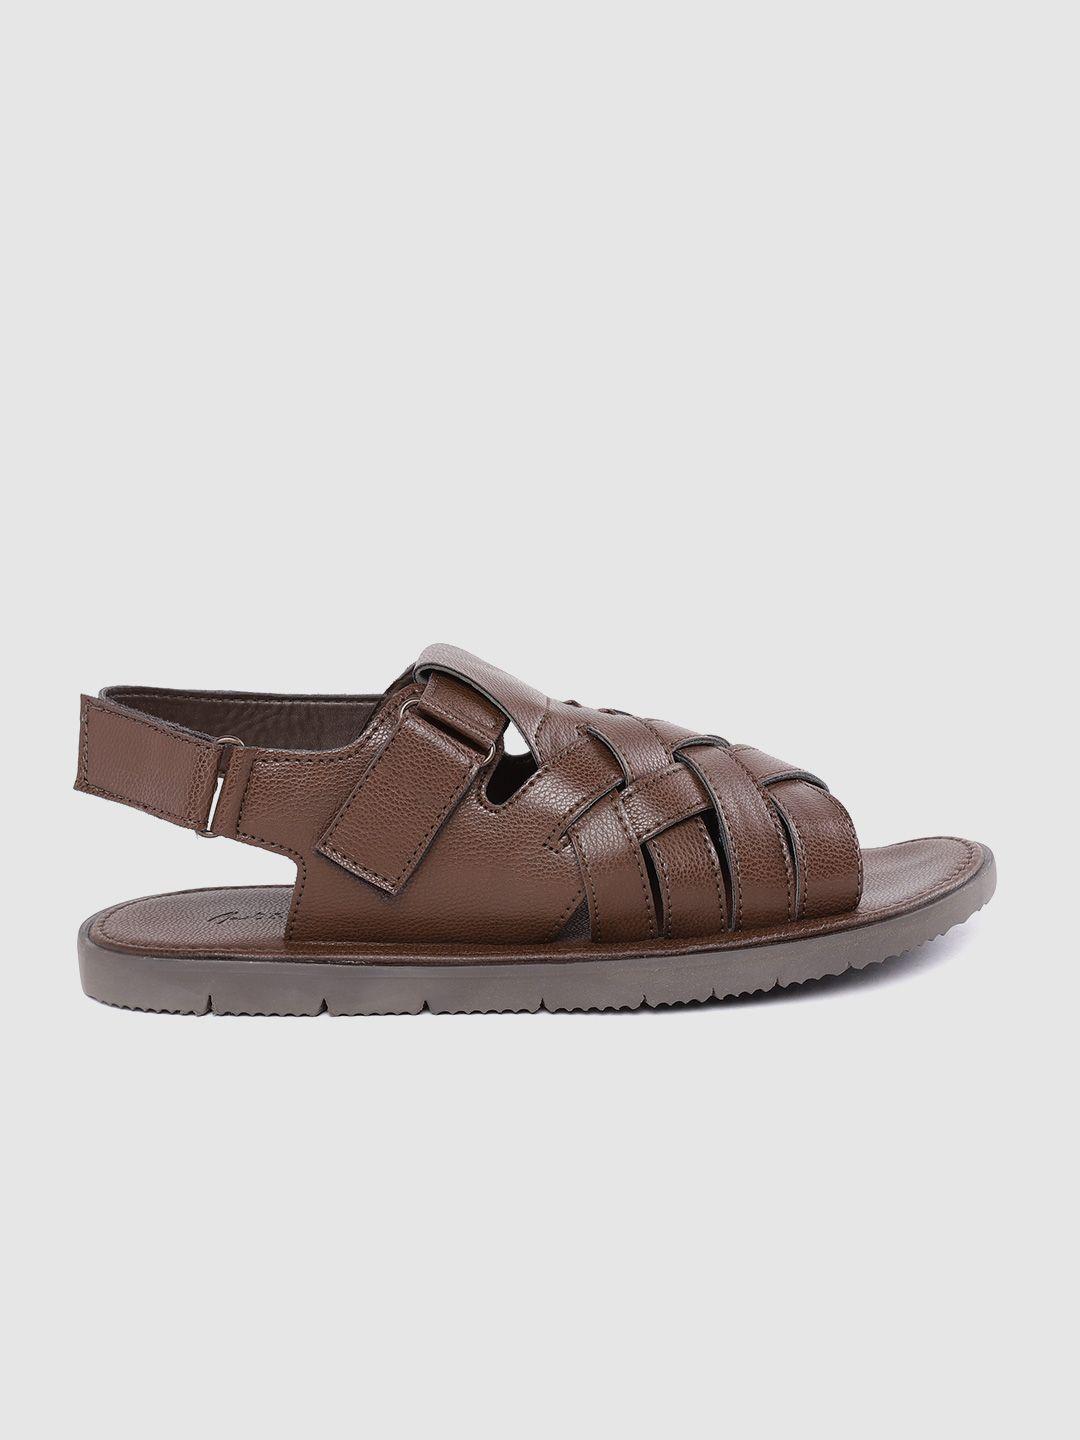 mast & harbour men brown solid basketweave strap comfort sandals